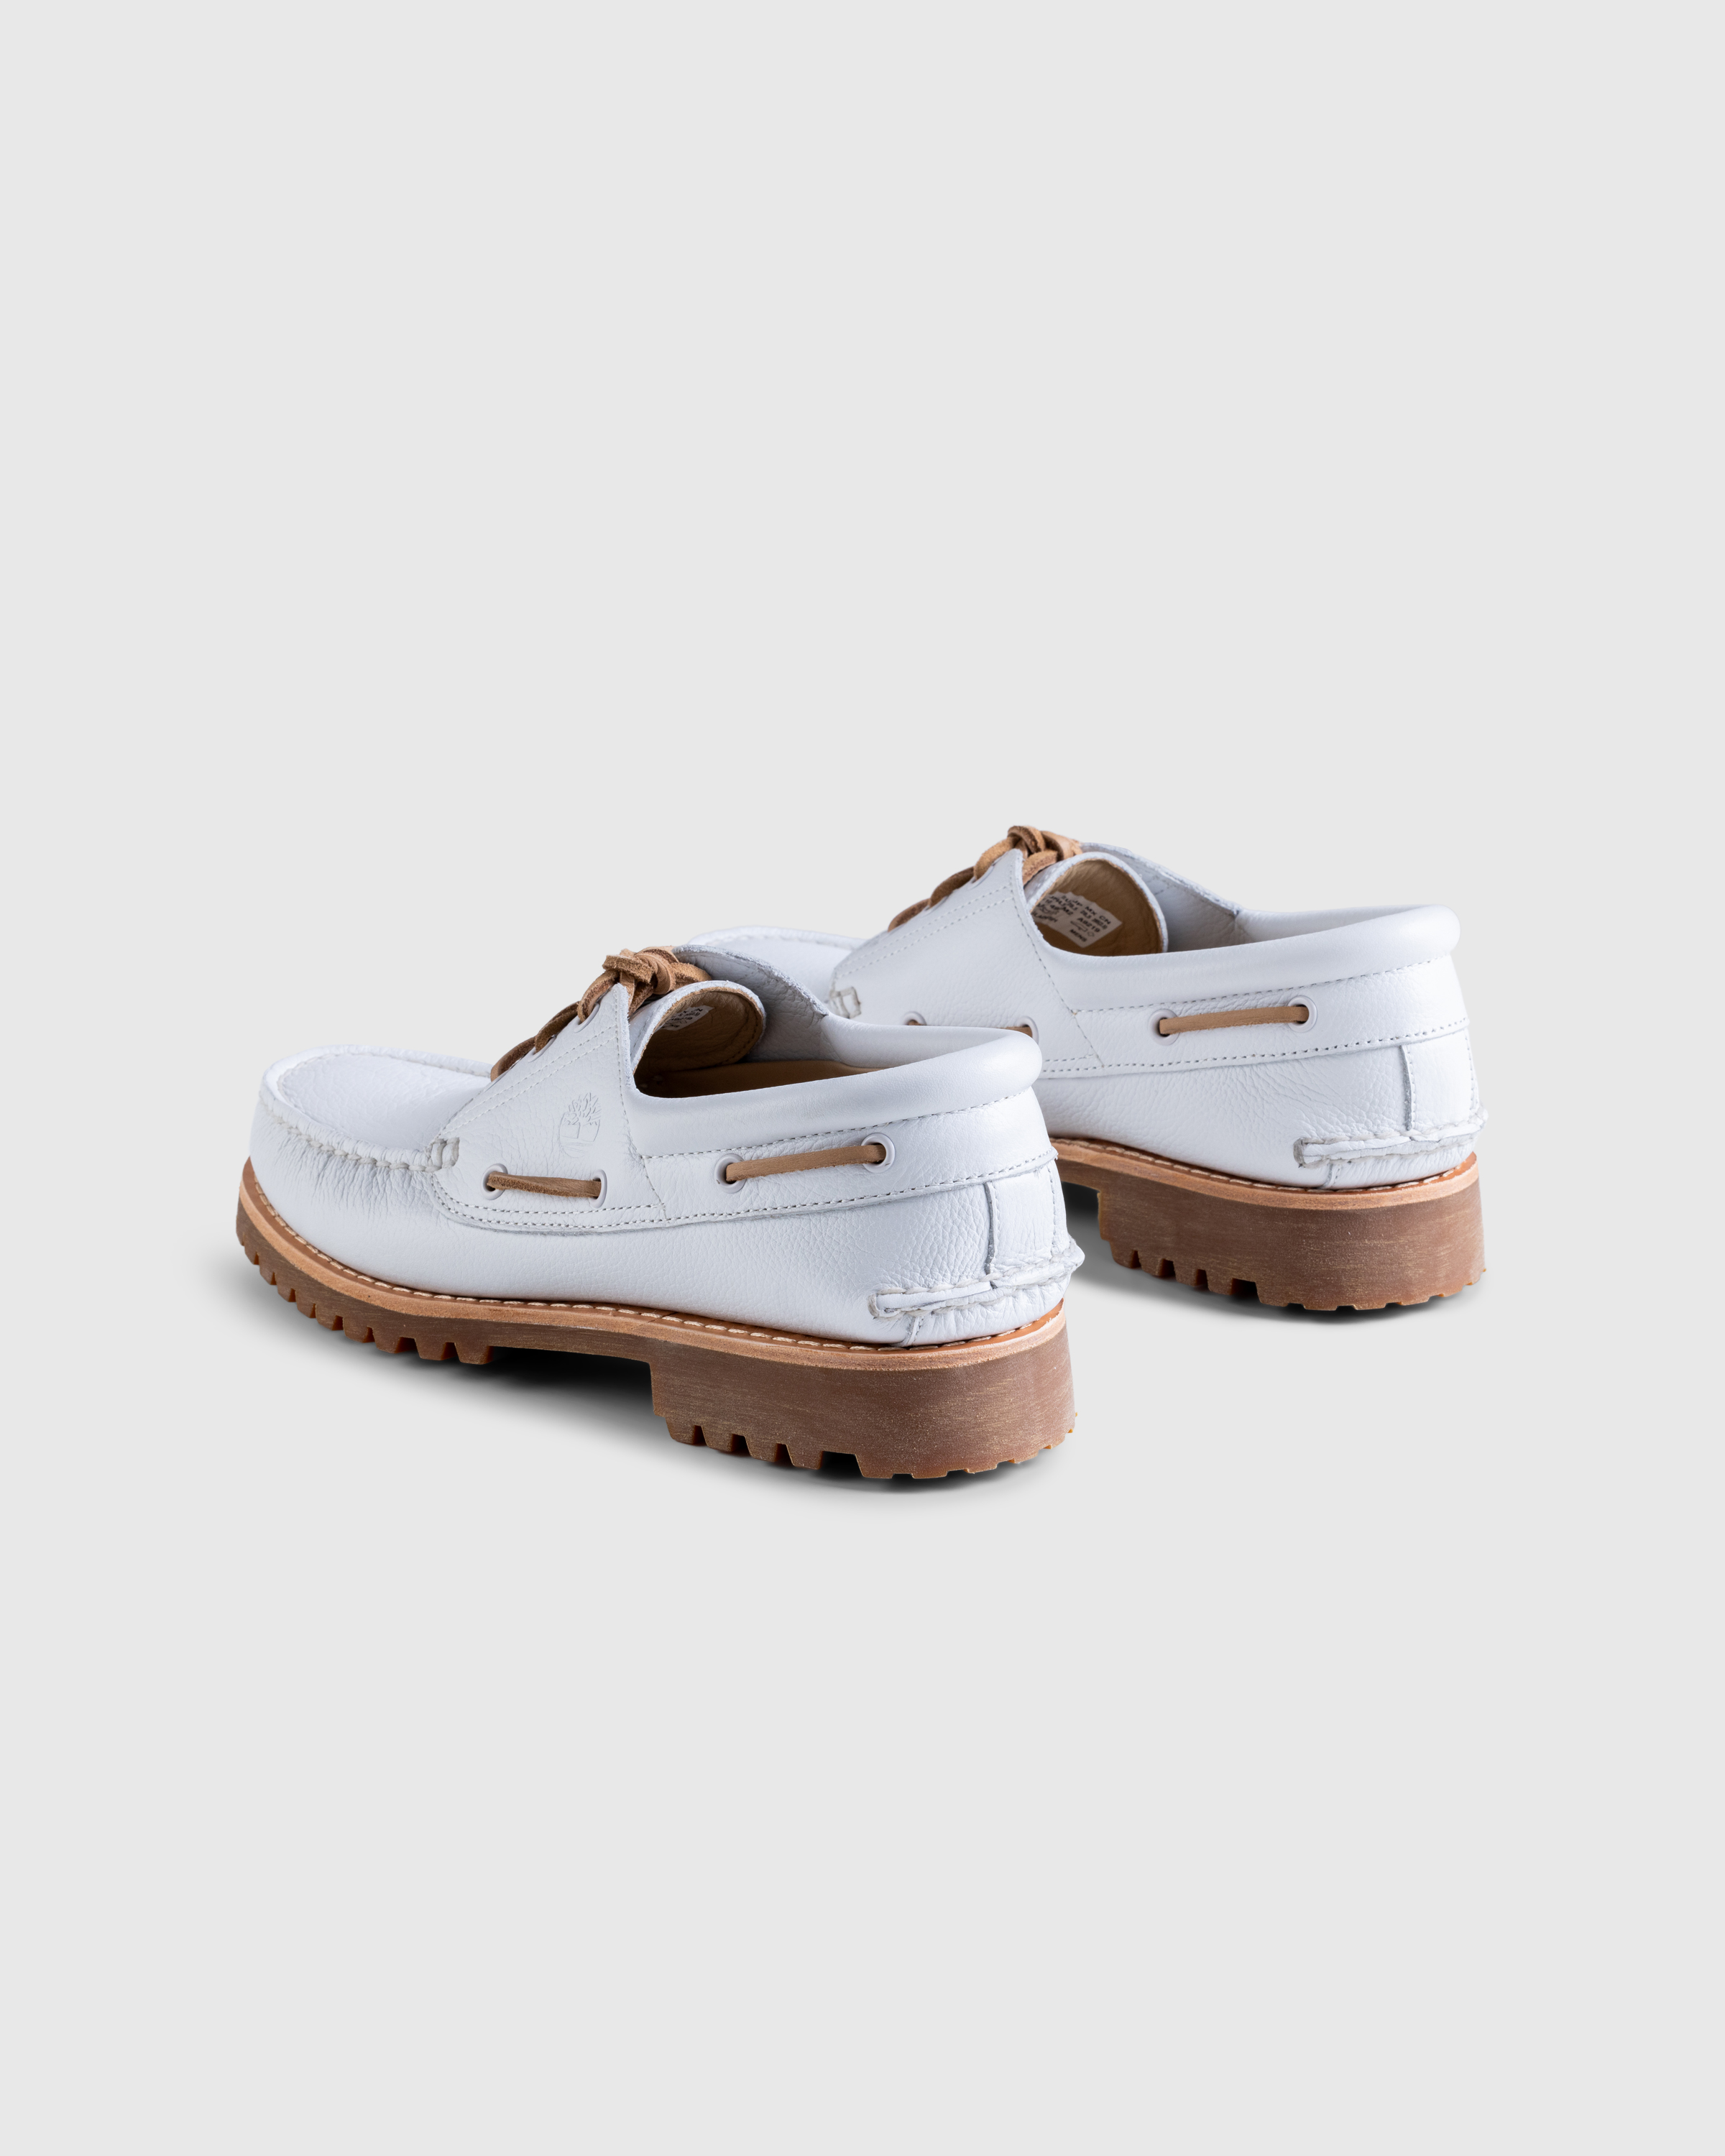 Timberland – 3-Eye Lug Boat Shoe White - Shoes - White - Image 4